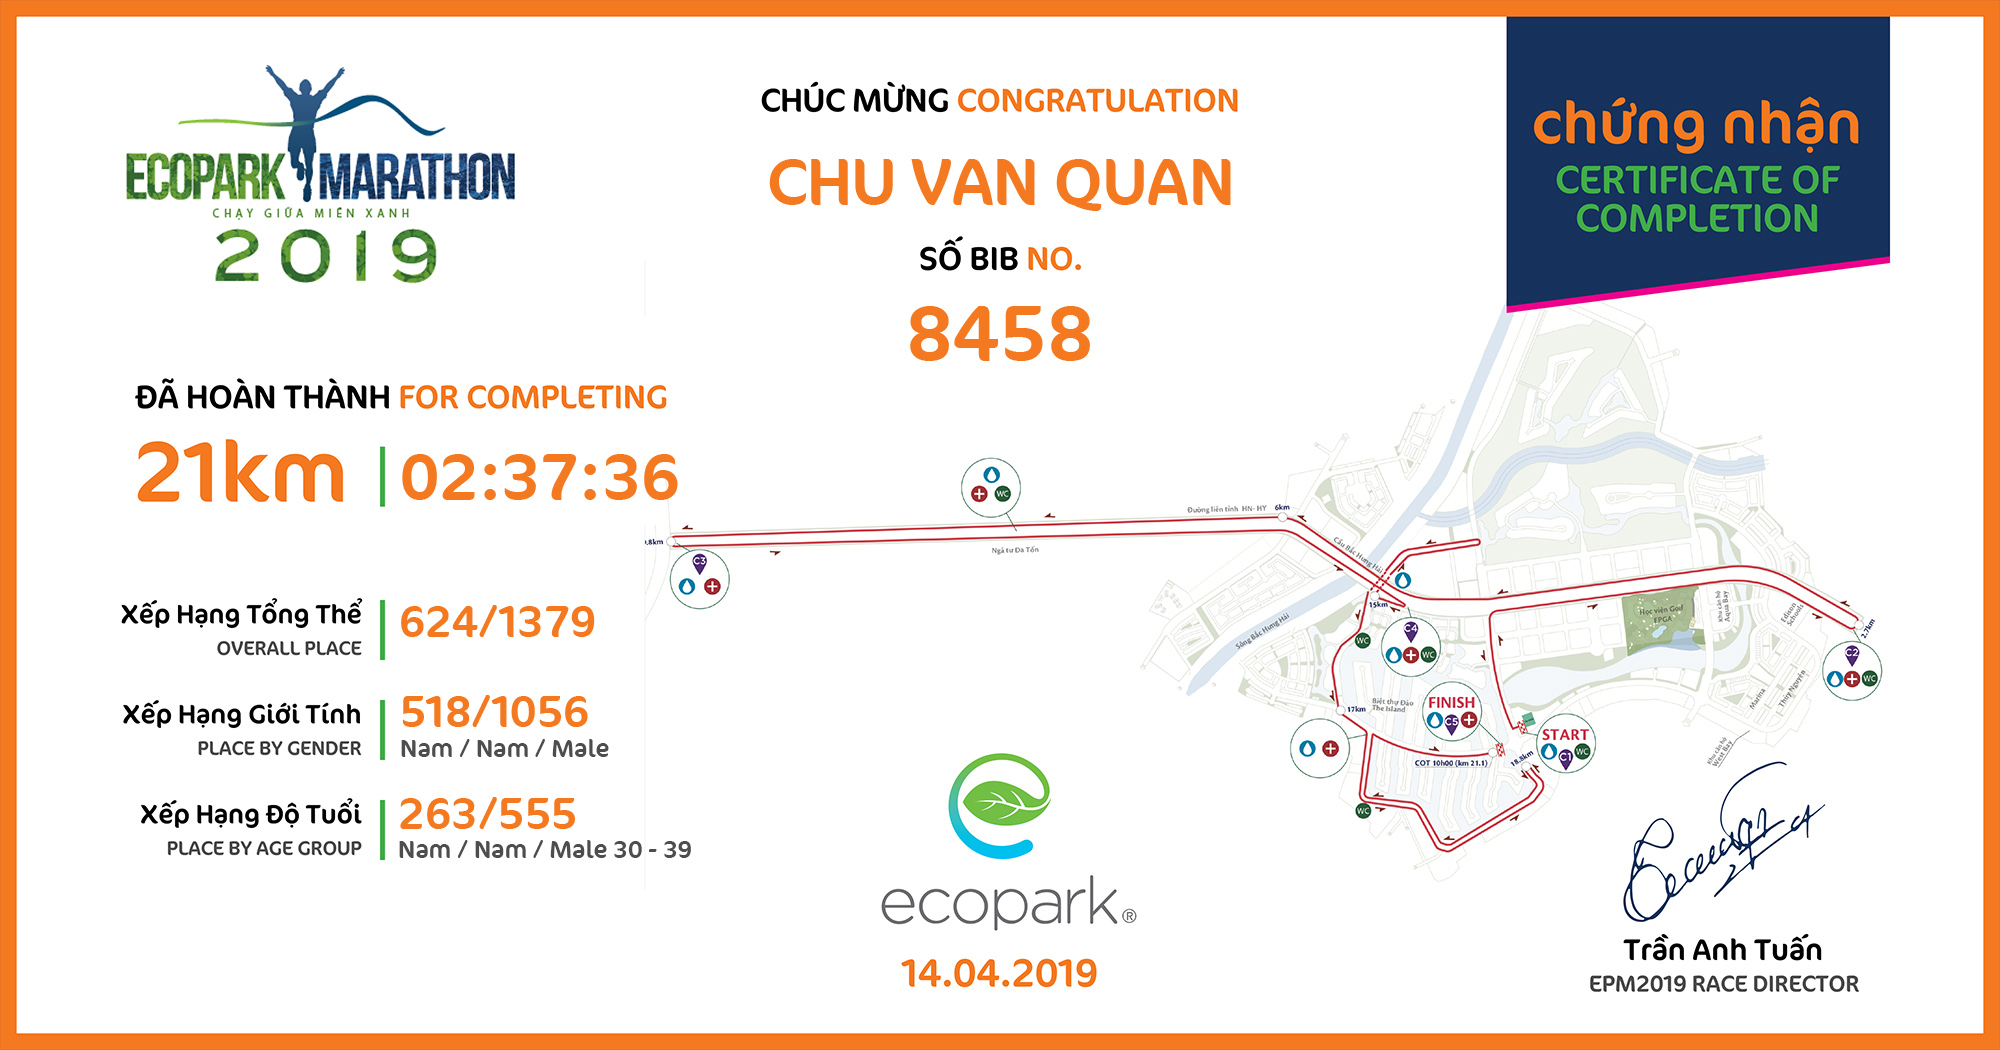 8458 - Chu Van Quan